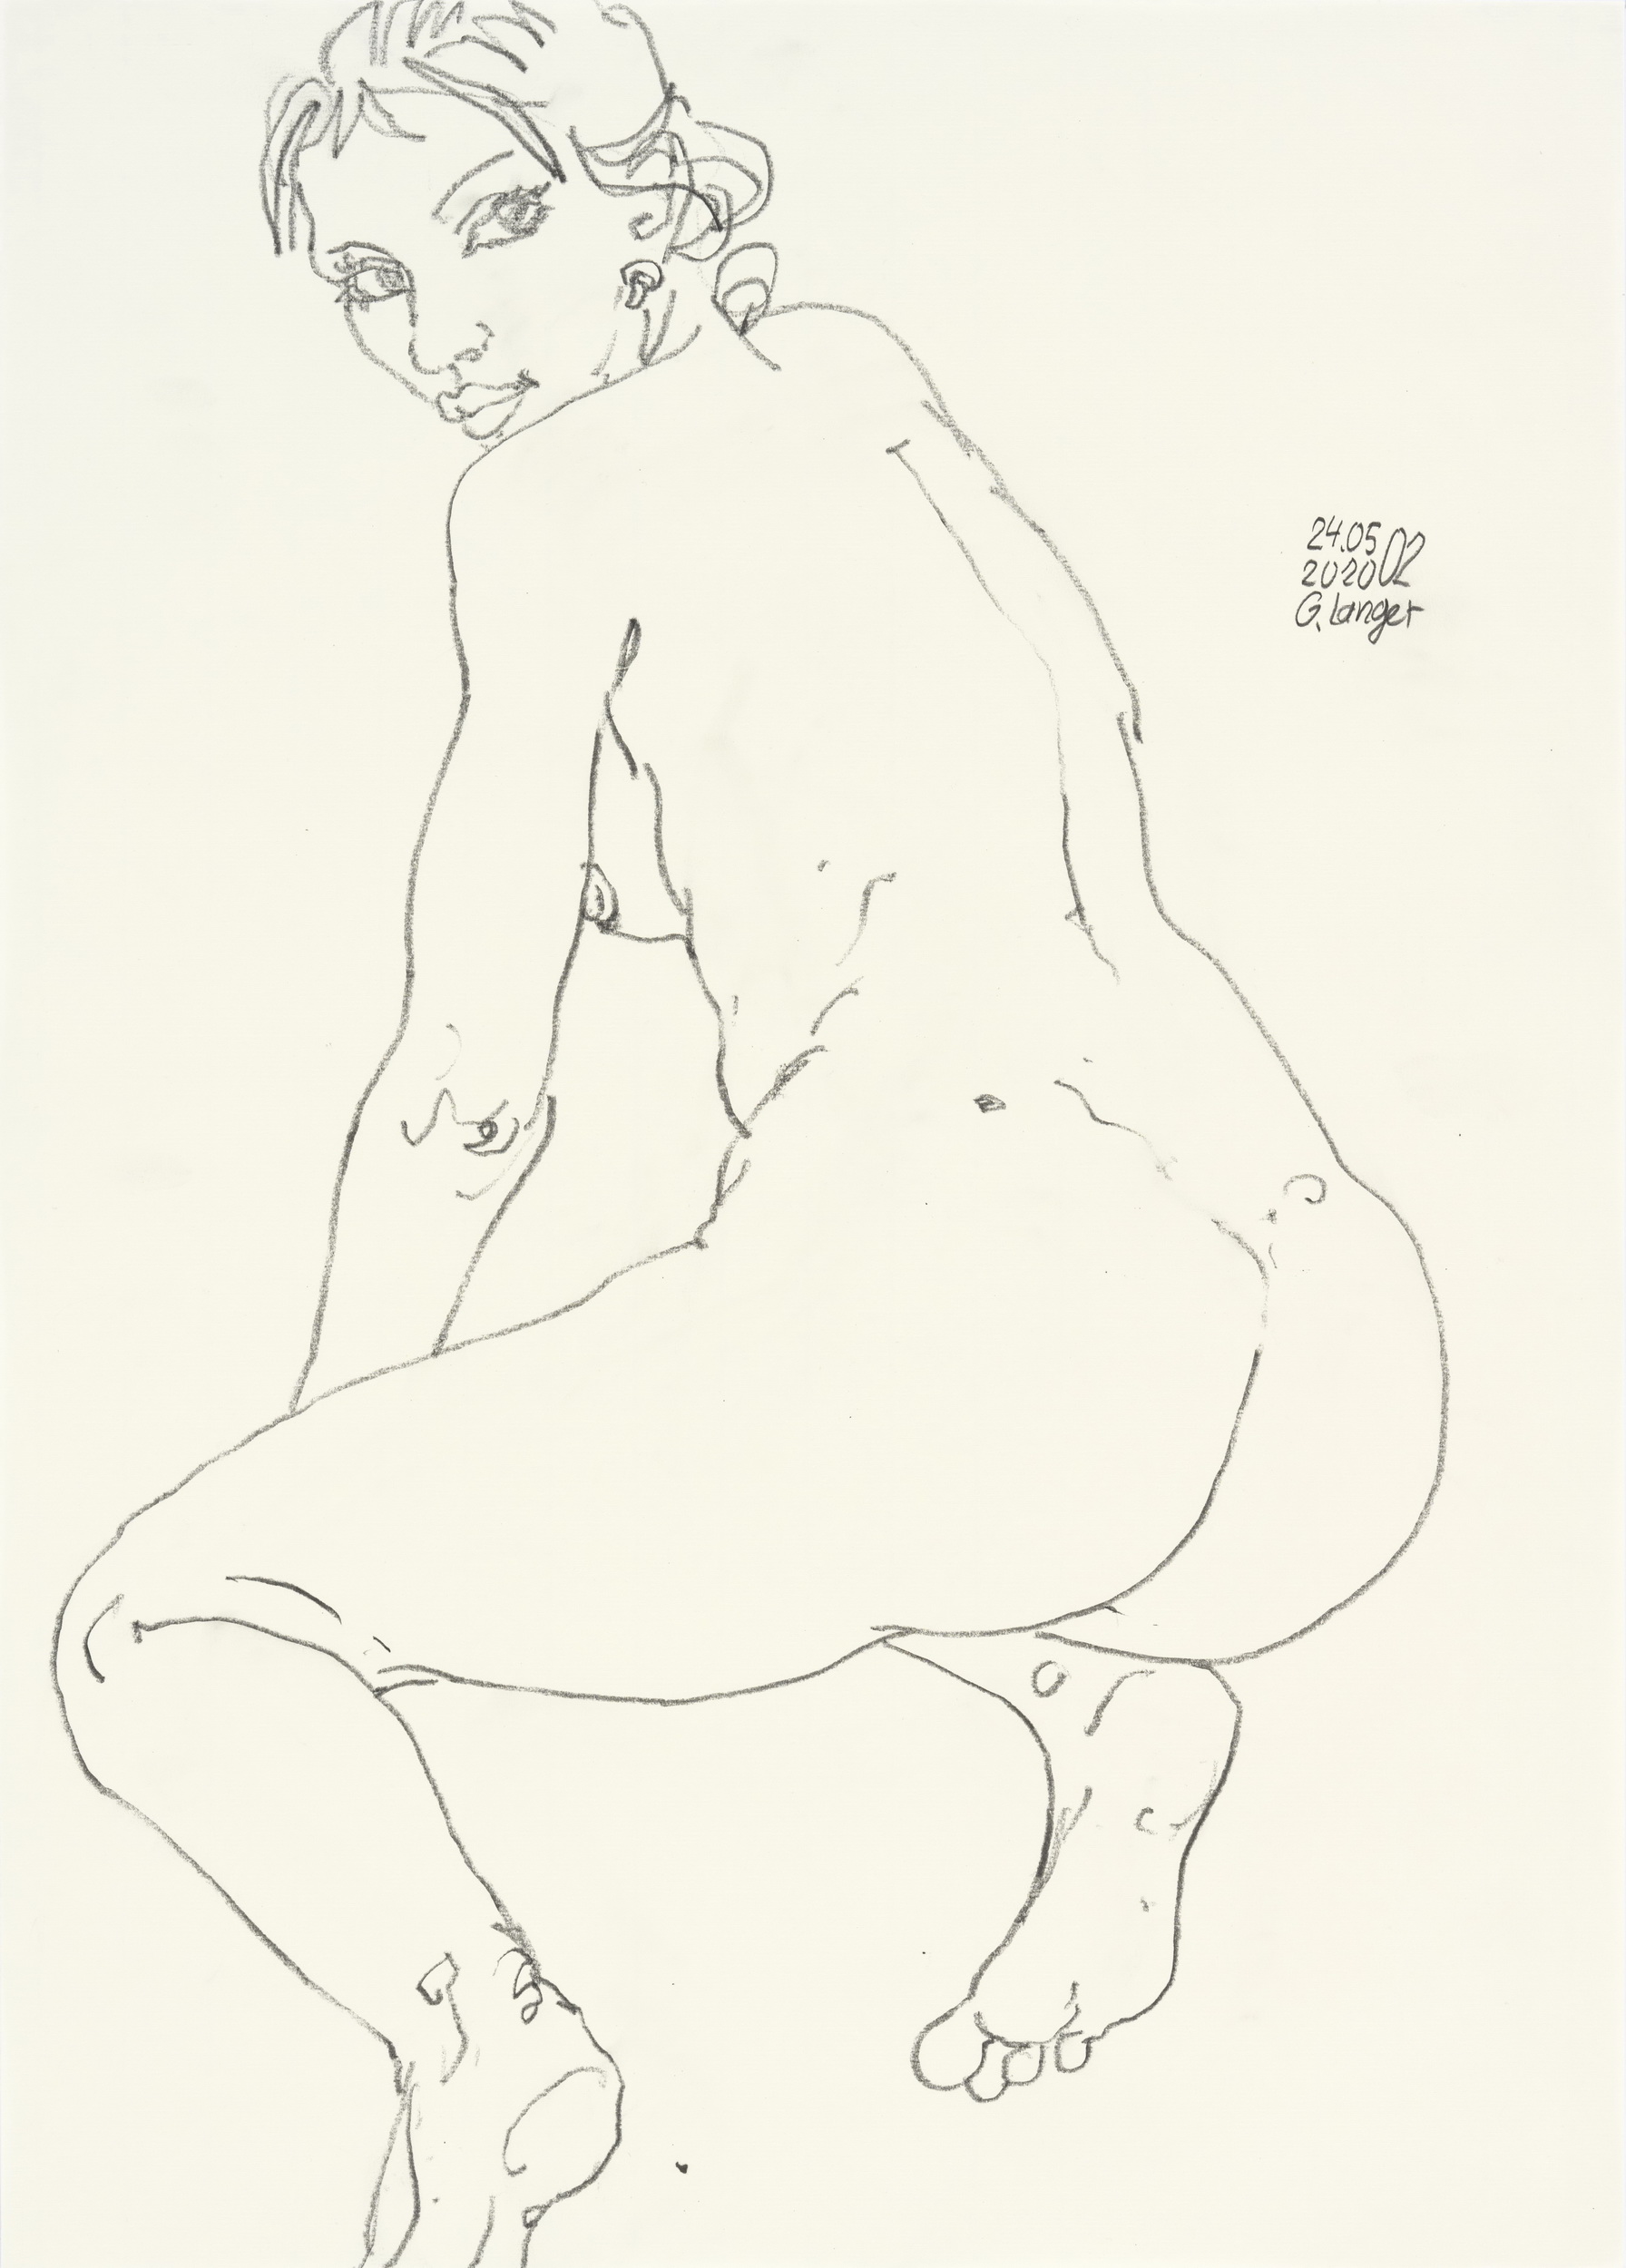 Gunter Langer, Kniendes nacktes Mädchen, 2020, Zeichnung, Zeichenpapier, 70 x 50 cm